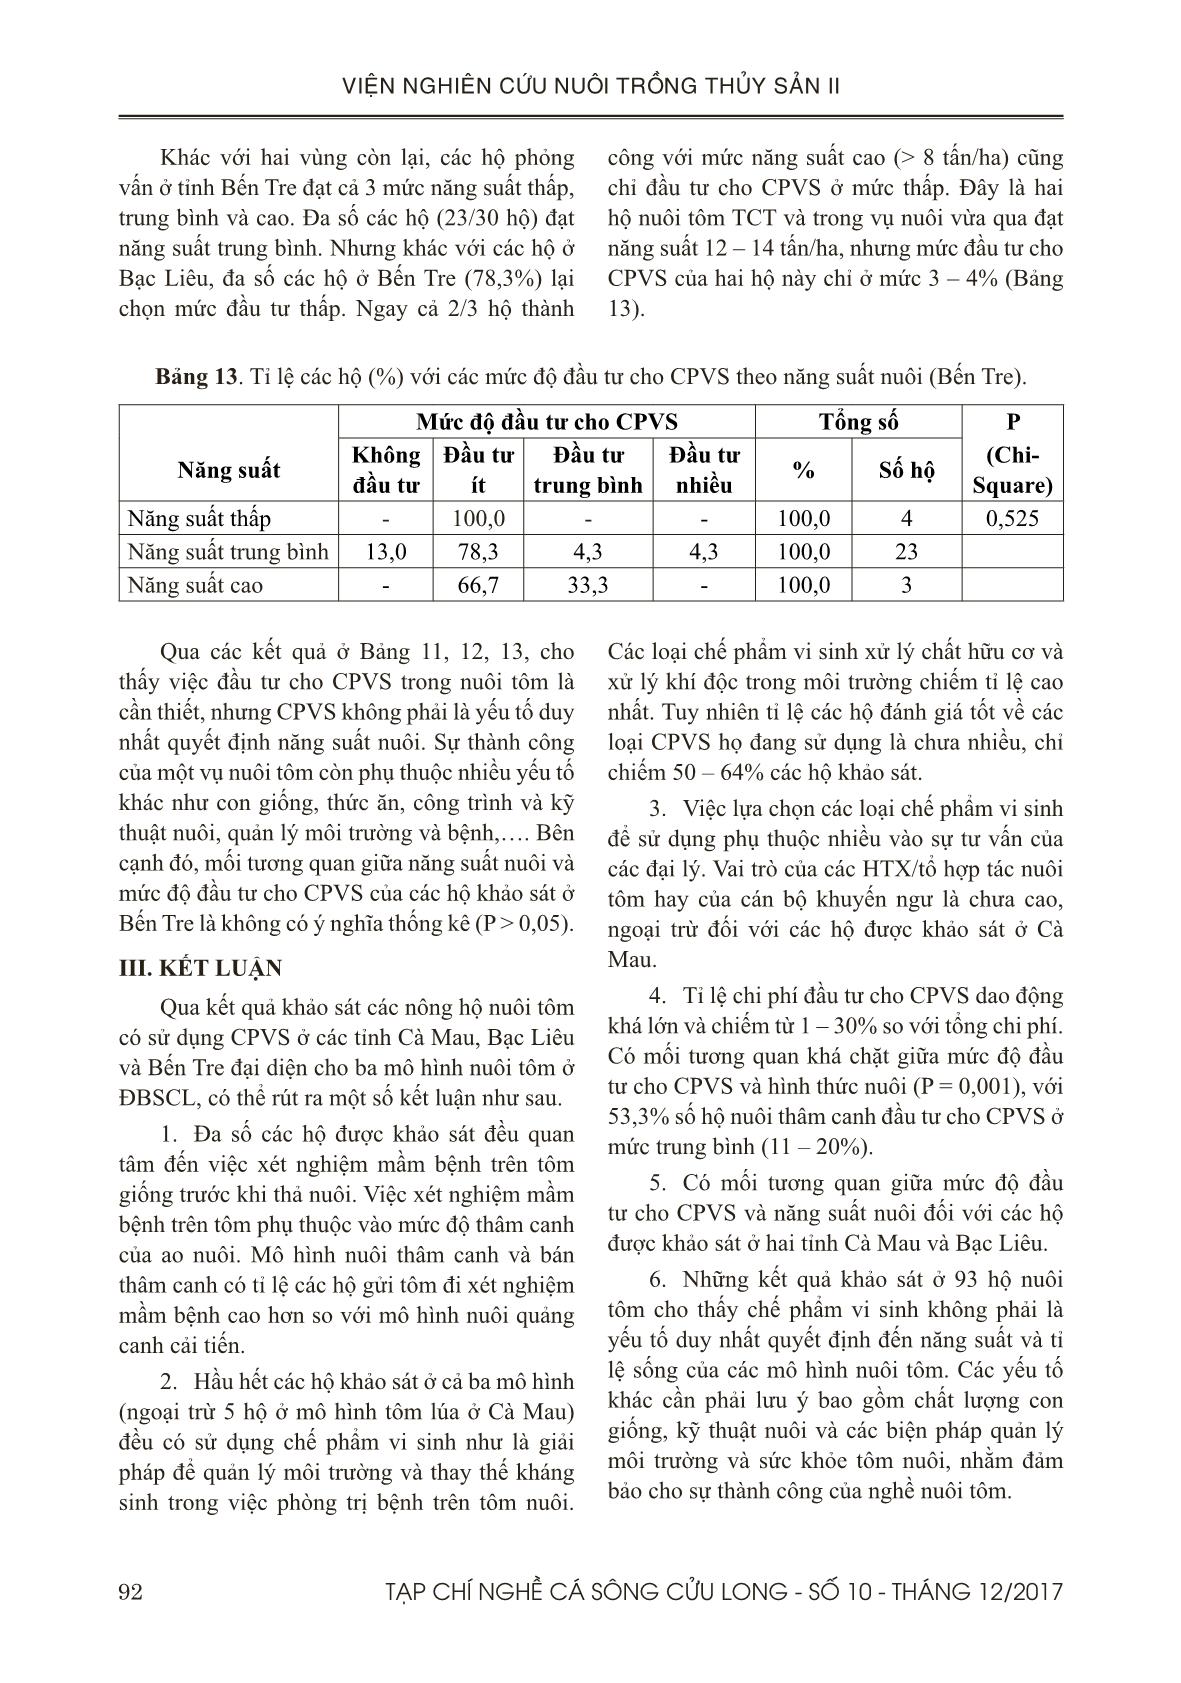 Đánh giá tình hình sử dụng chế phẩm vi sinh trong nuôi tôm ở đồng bằng sông Cửu Long trang 10